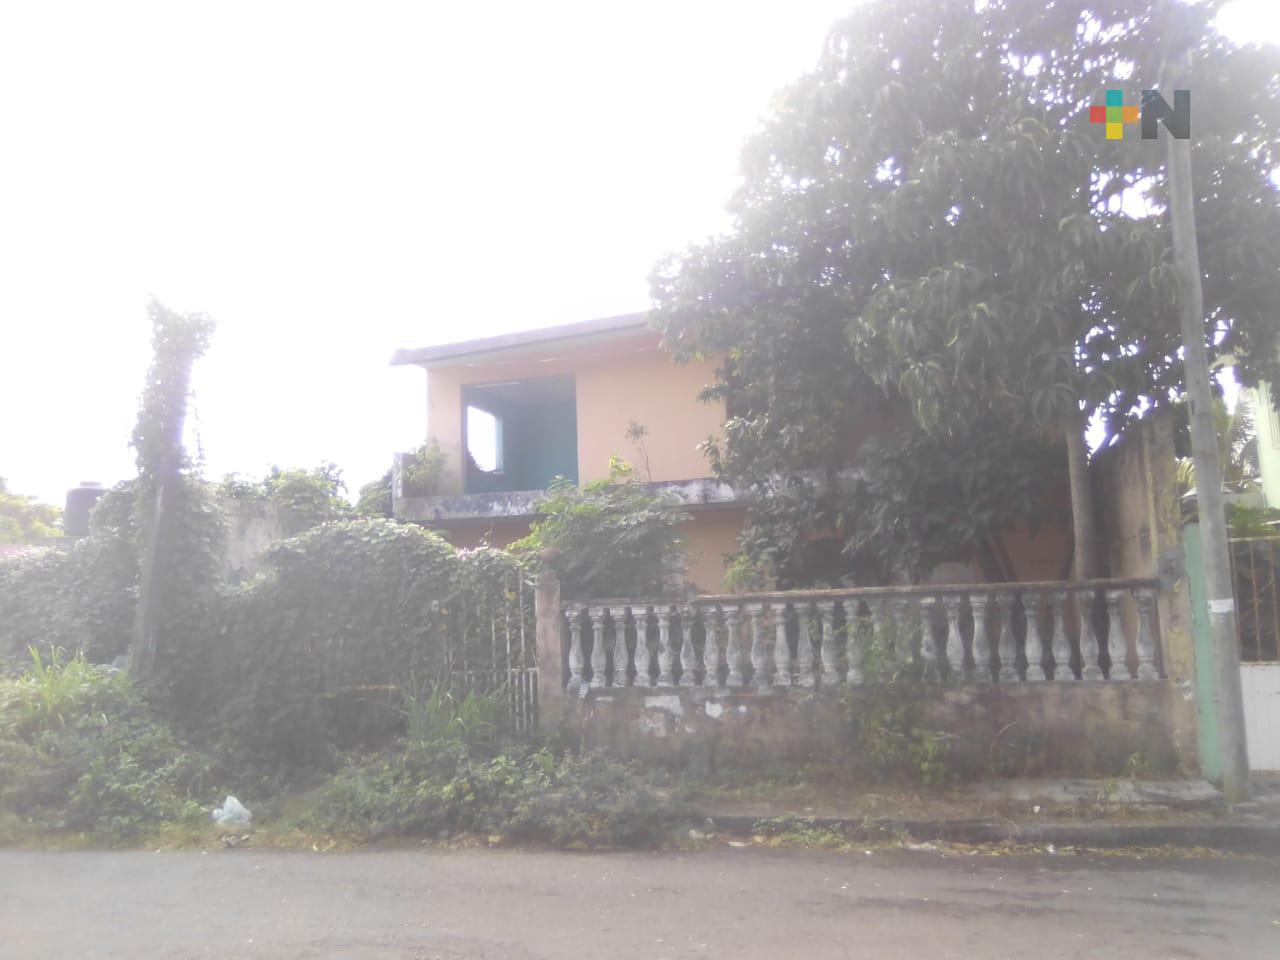 Casa abandonada de Boca del Río es nido de ladrones, piden más vigilancia